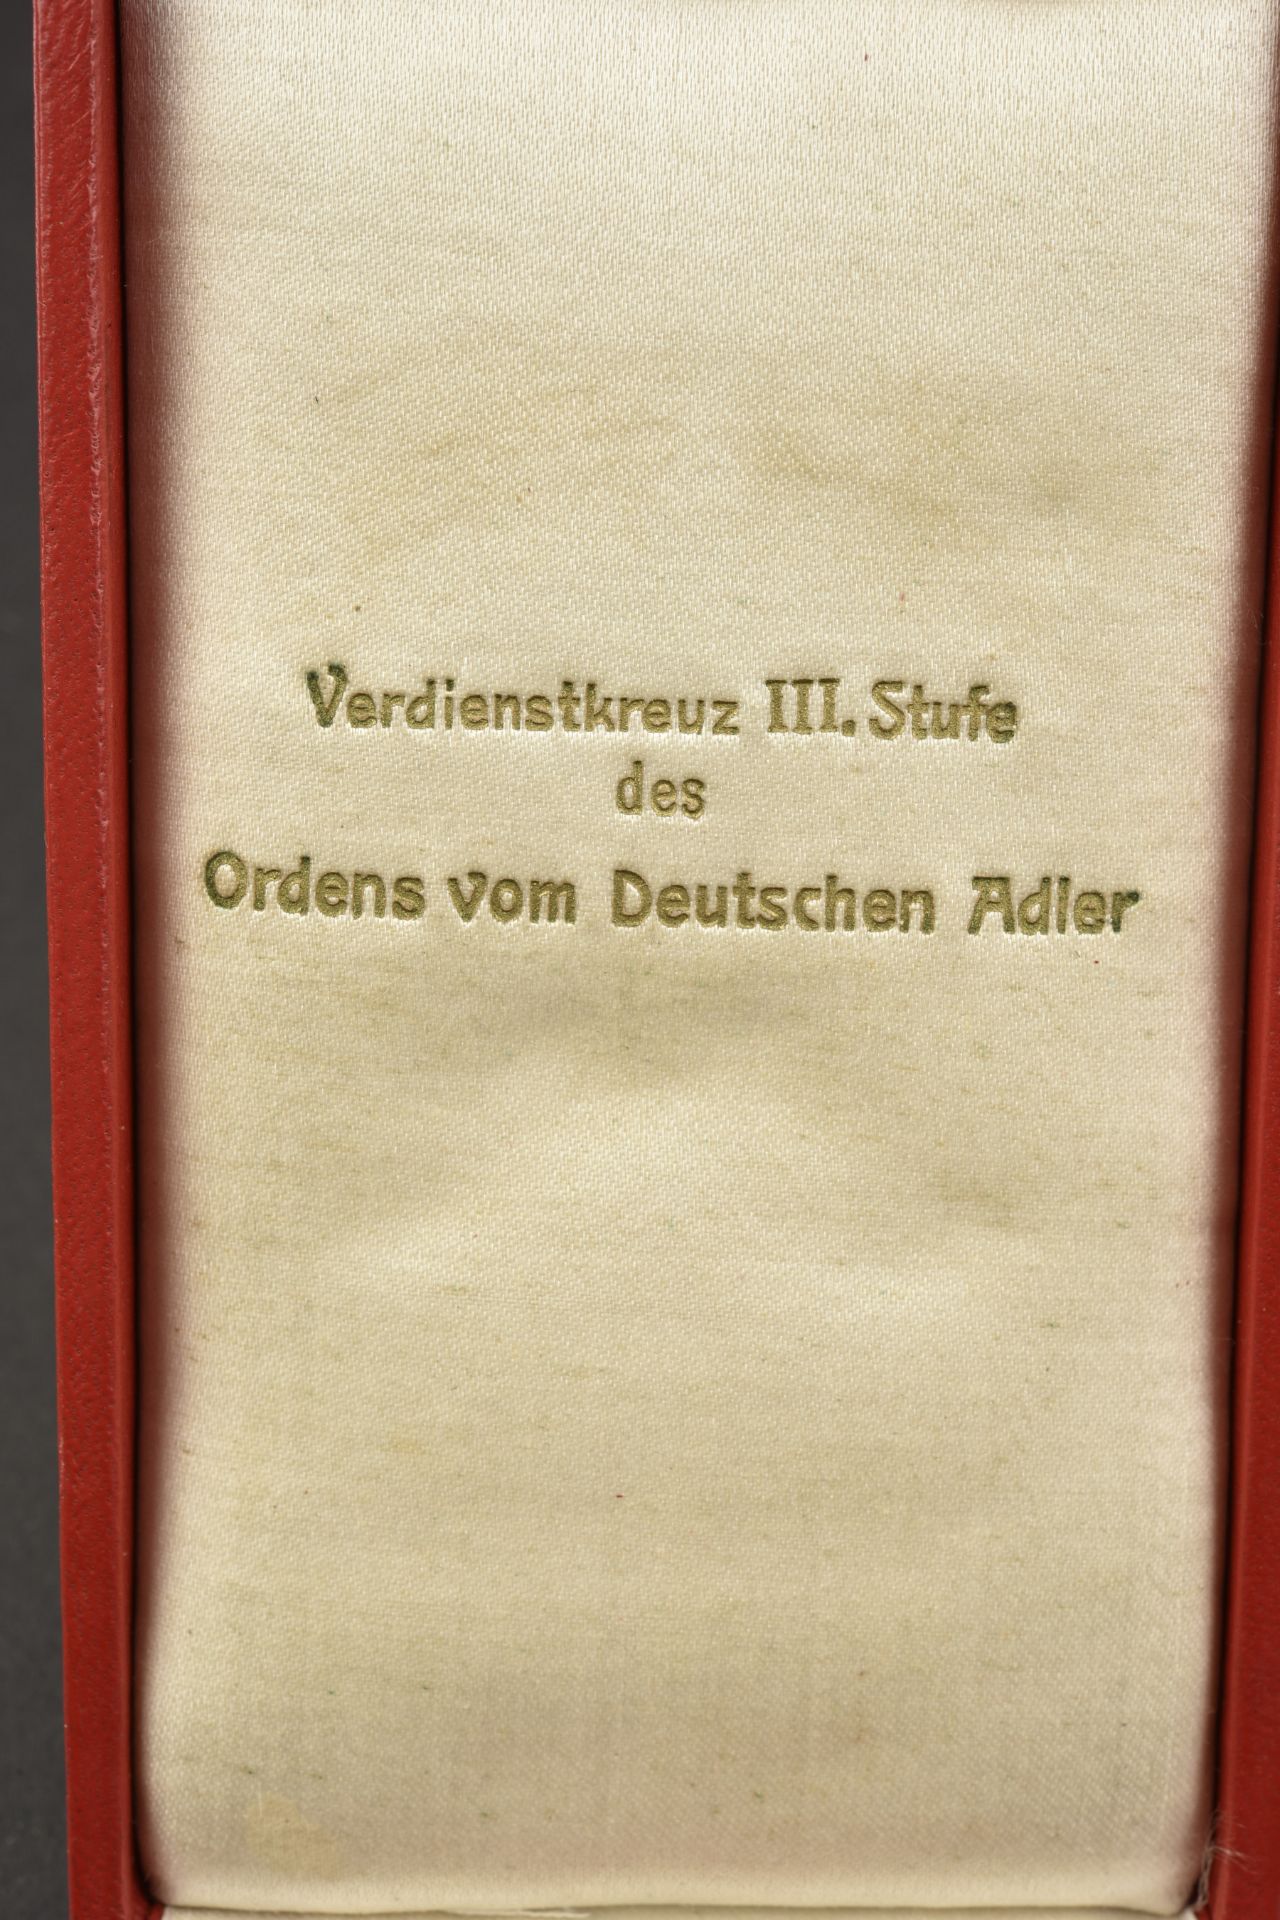 Medaille Deutsche Adler. Deutsche Adler medals. - Image 7 of 8